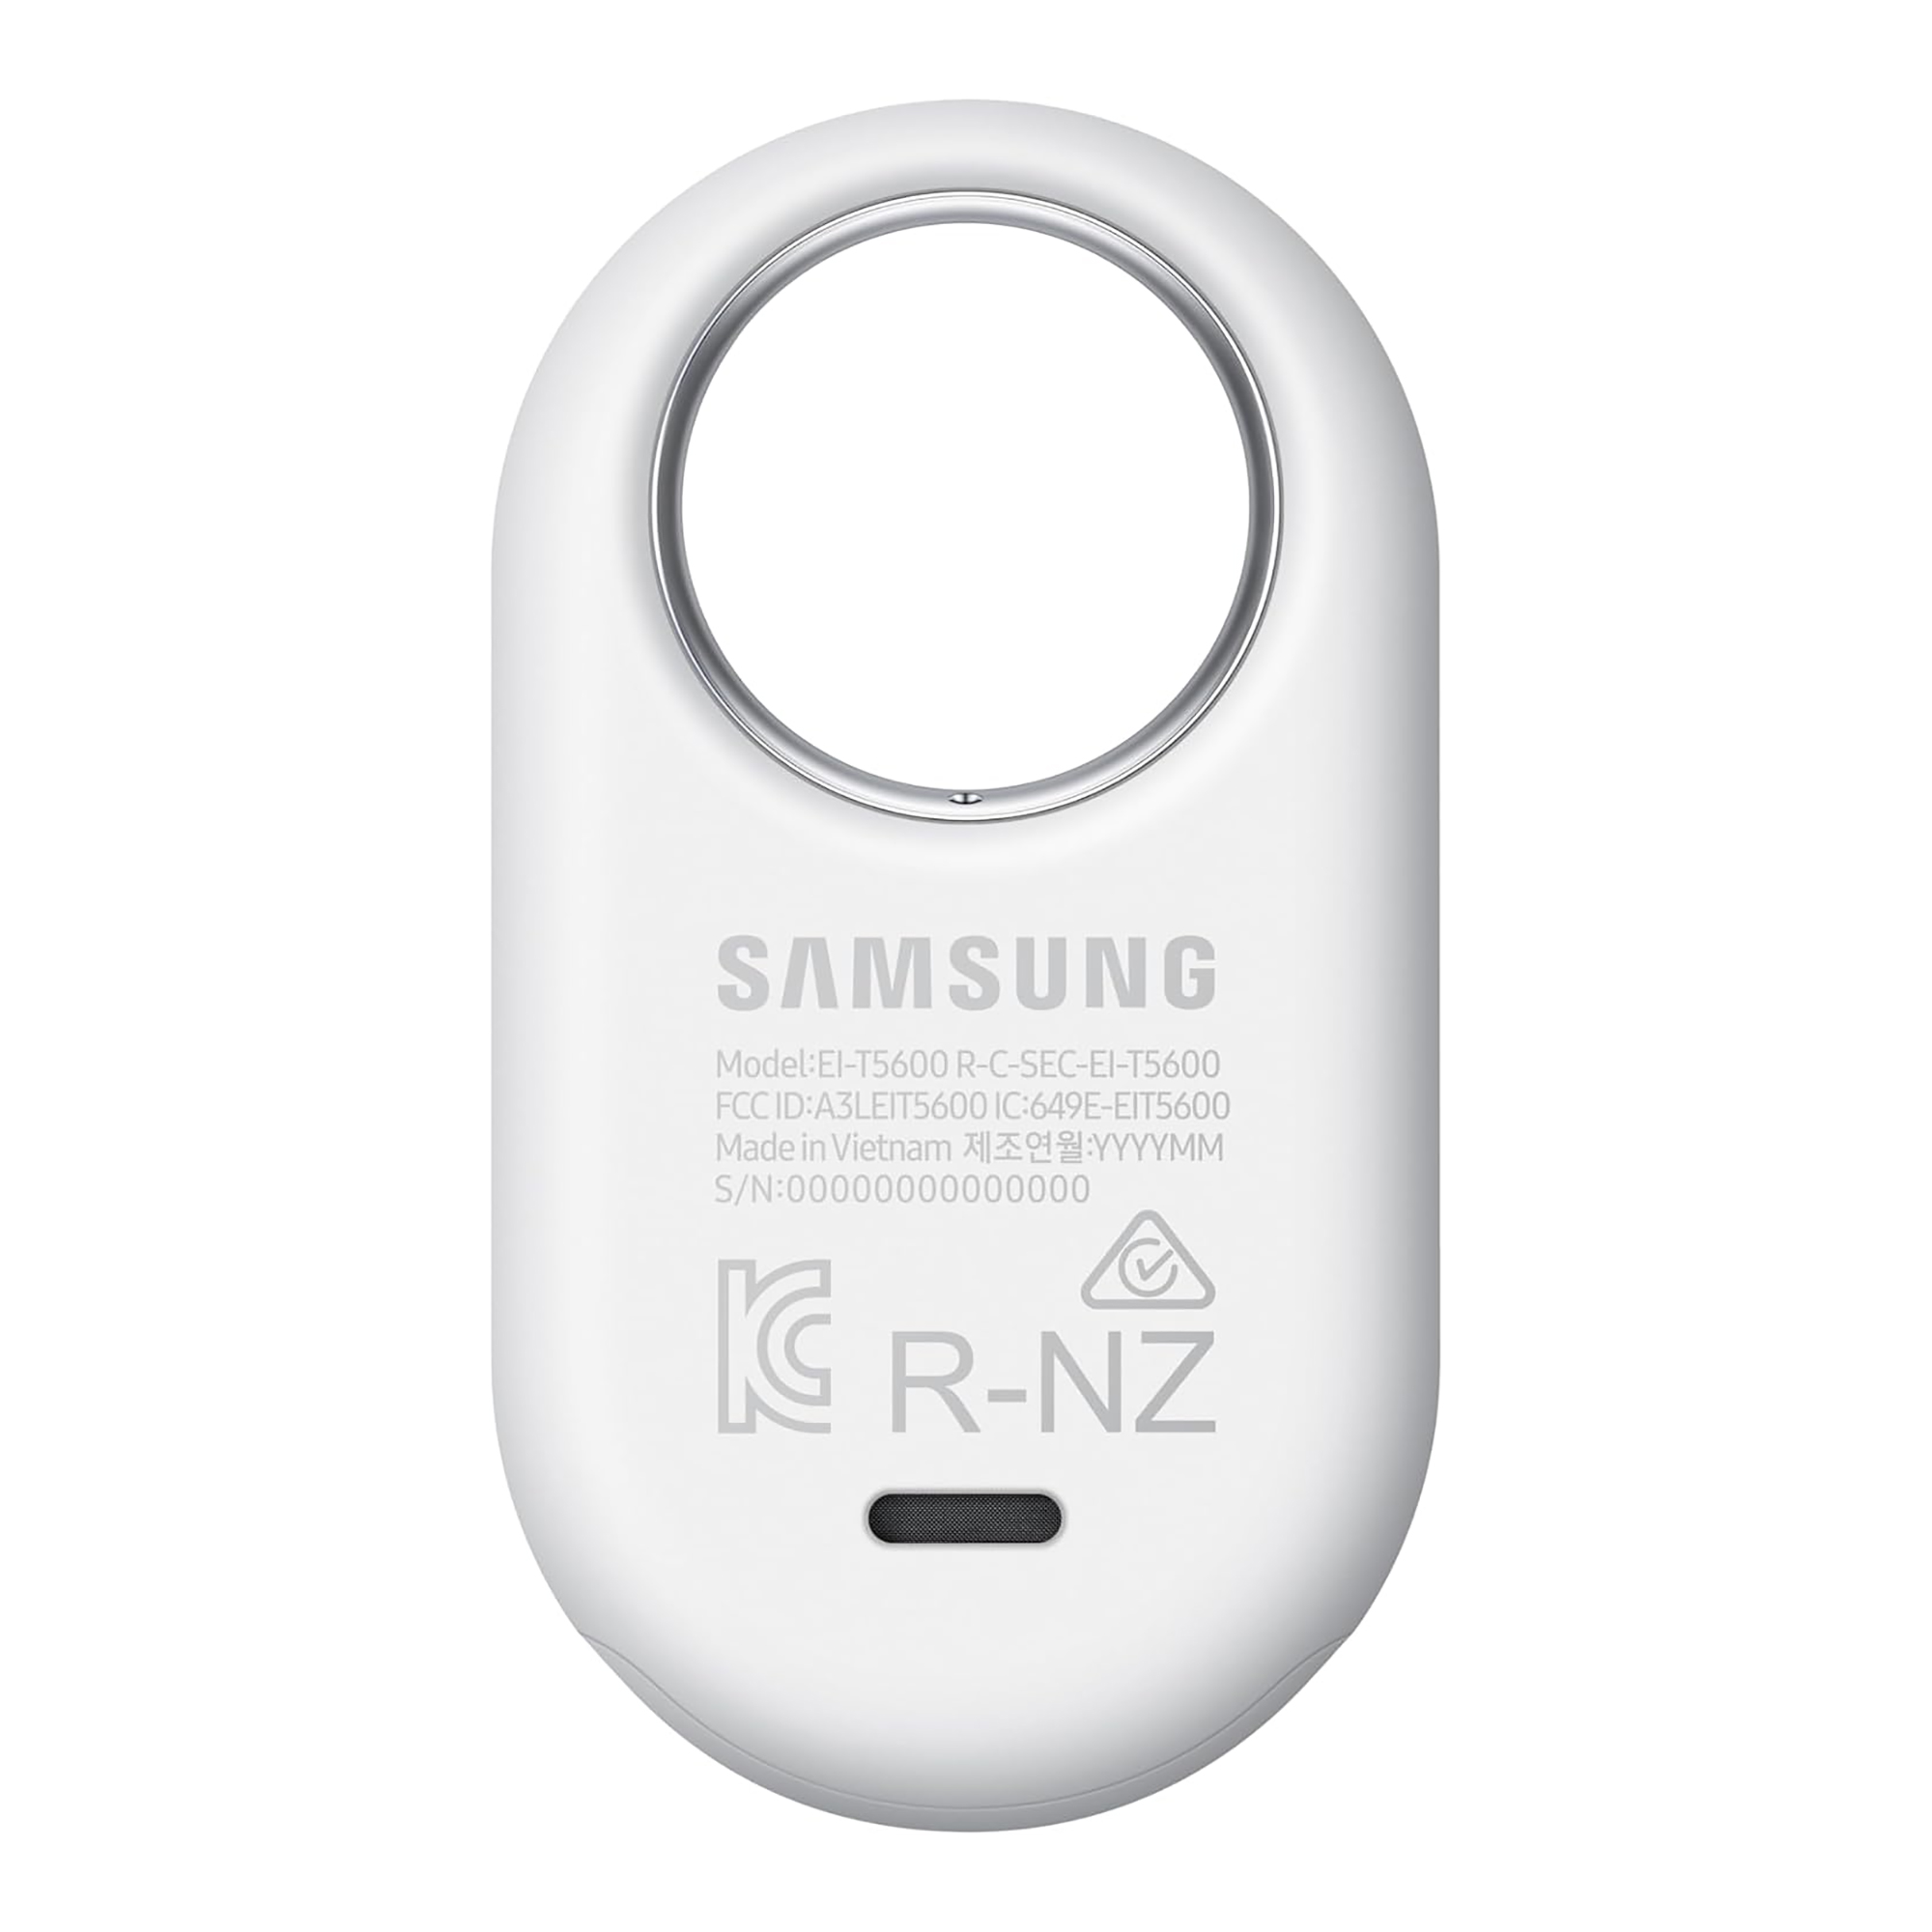 Rastreador Samsung Smarttag 2 Etiqueta Y Encuentra - PcService